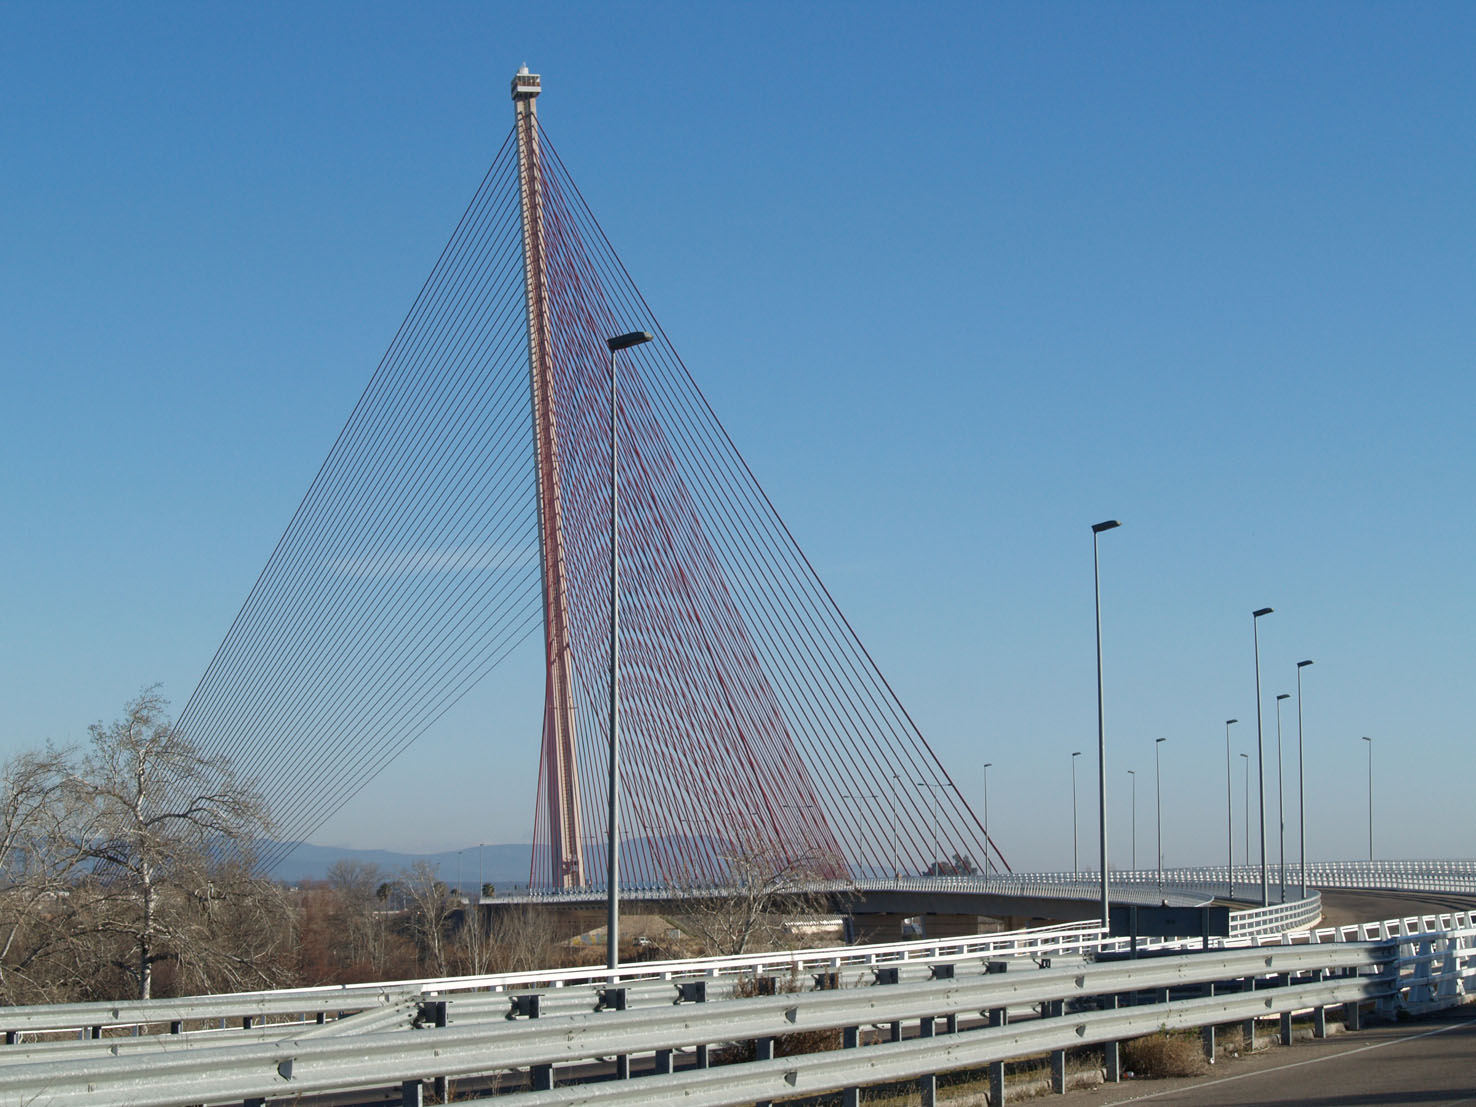 Talavera es una ciudad de puentes. El último, el Puente de Castilla-La Mancha, ha sido el mas polémico, por la elevada inversión que supuso su construcción en tiempos de crisis. Con sus 192 metros es el puente más alto de España y el segundo más elevado de Europa. Así lo ha visto la cámara.